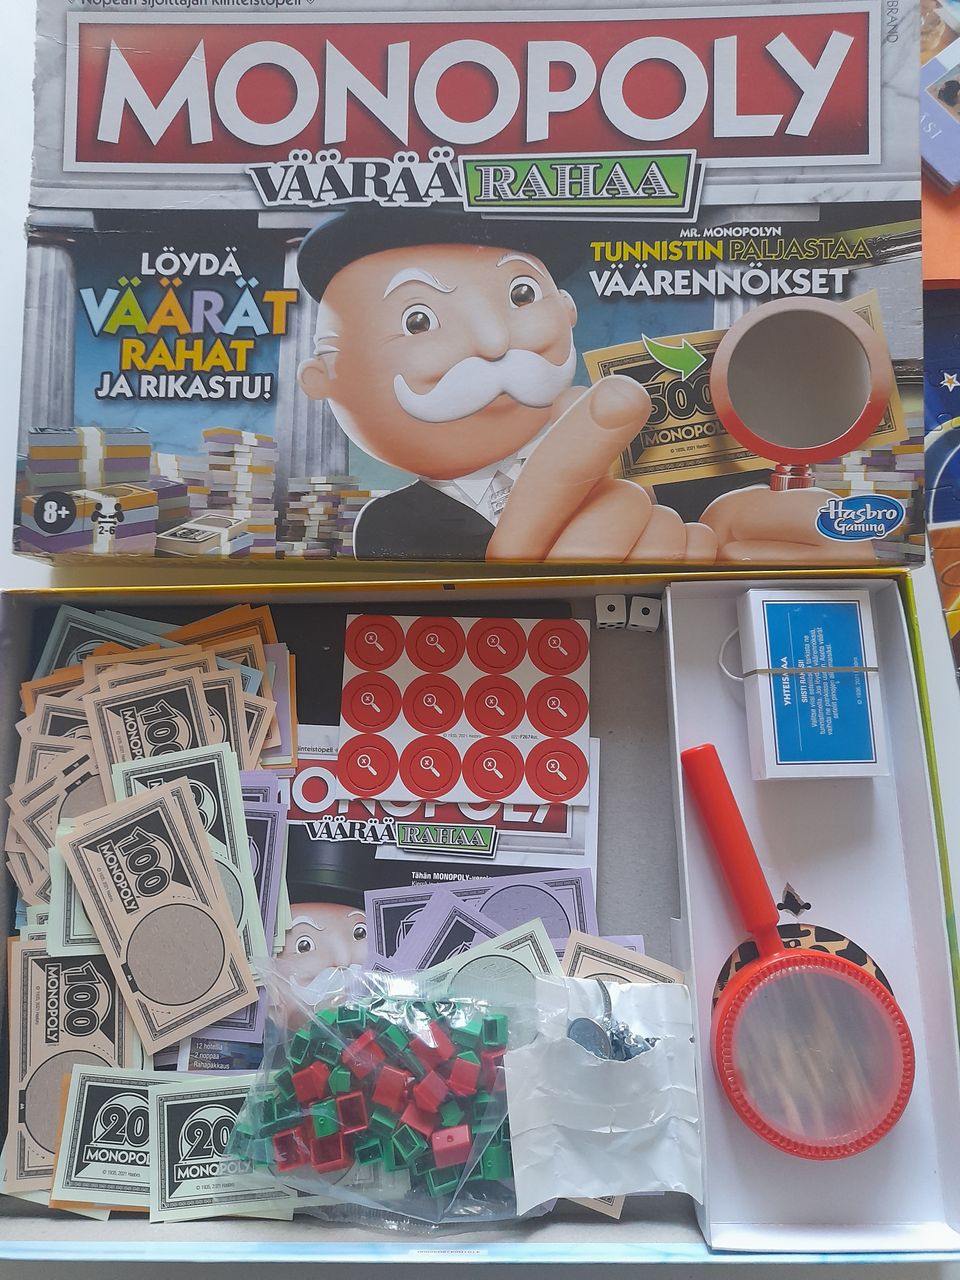 Monopoly väärää rahaa